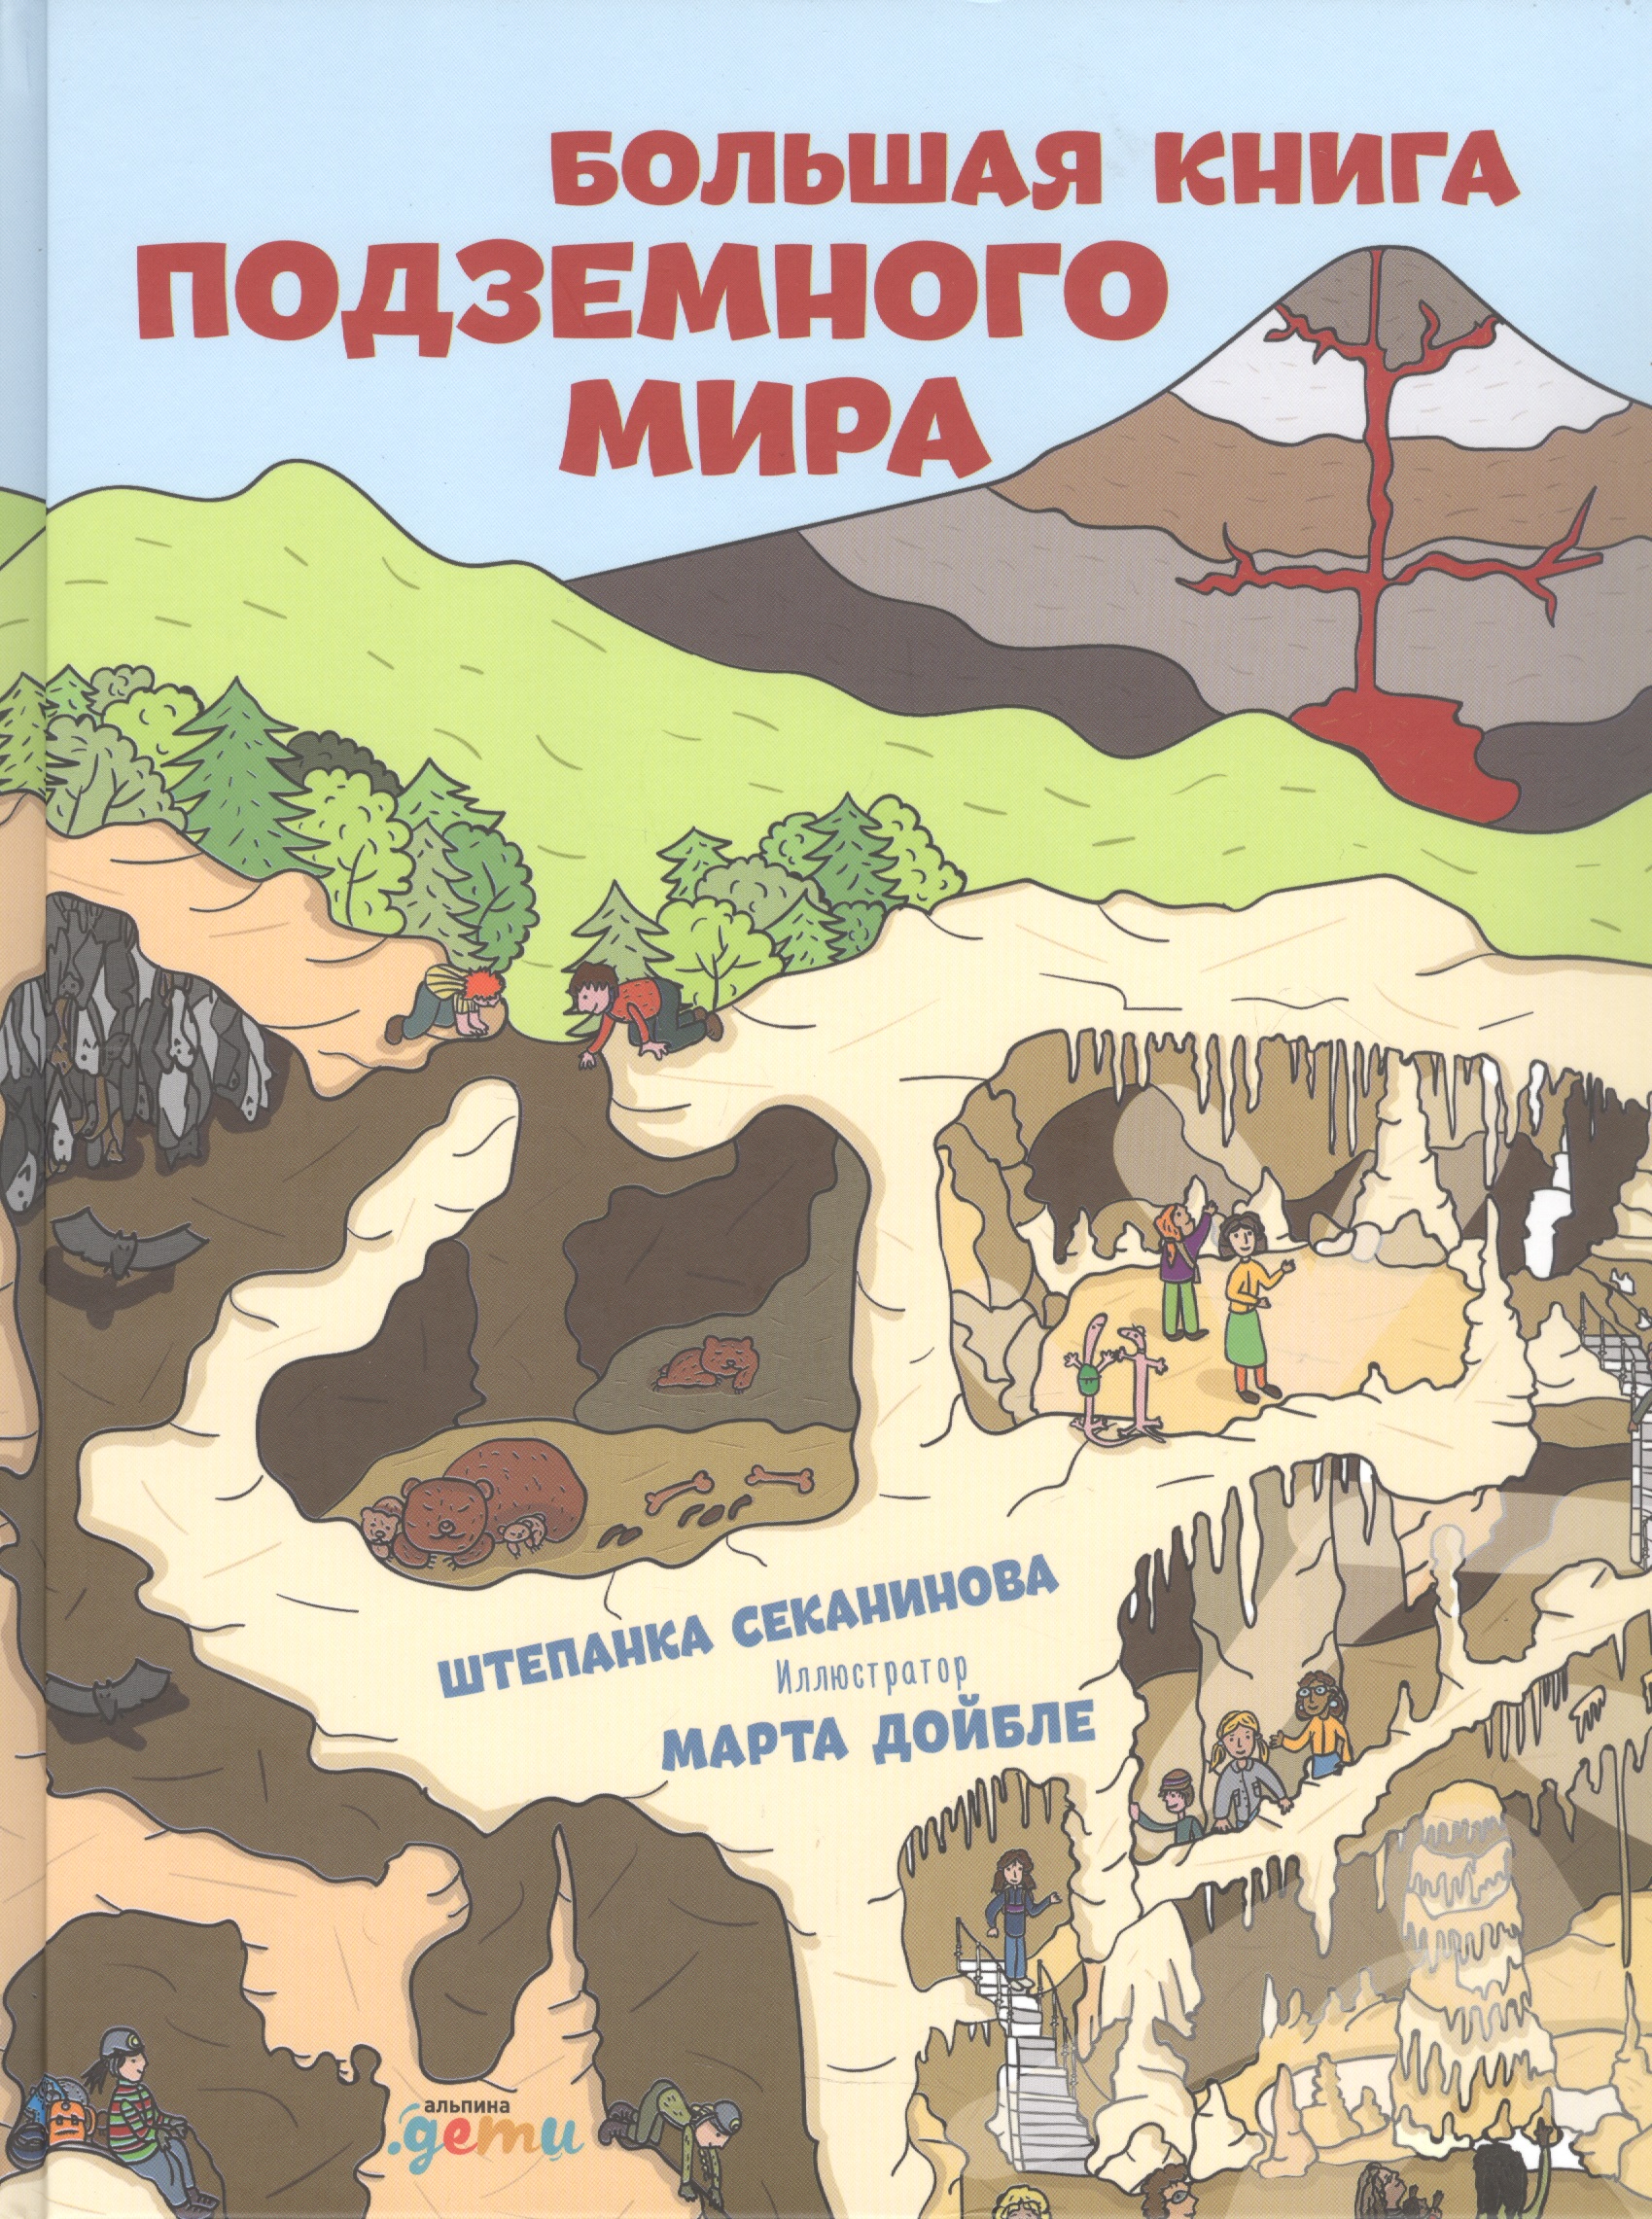 Большая книга подземного мира. Для детей 7-12 лет секанинова штепанка большая книга подземного мира для детей 7 12 лет